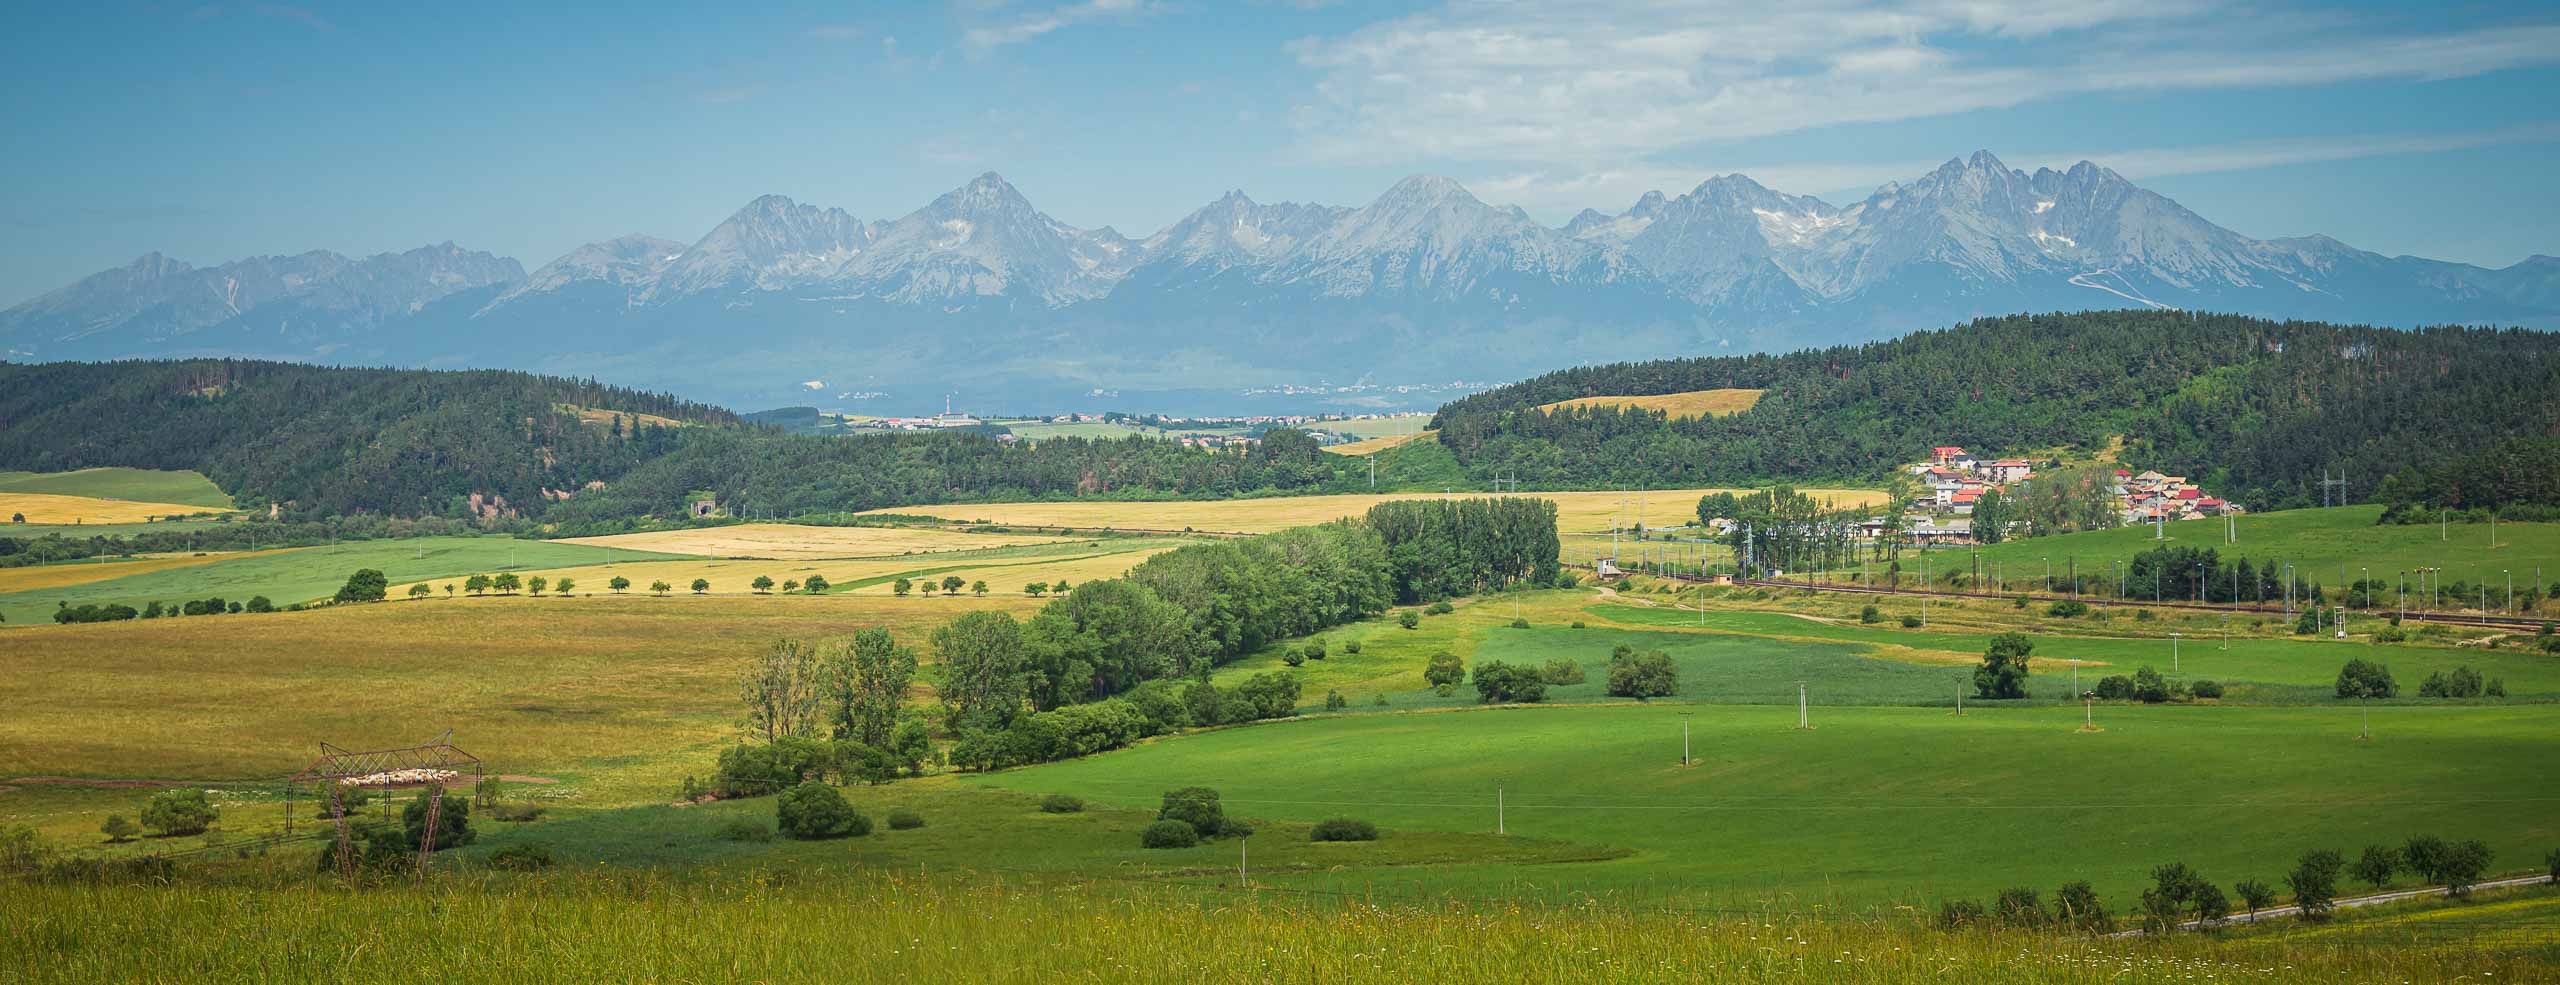 Paysage de Slovaquie, avec une vue sur le massif des Tatras, à l'extrême Nord-ouest des Carpates. De l'autre côté des montagnes se trouve la Pologne.